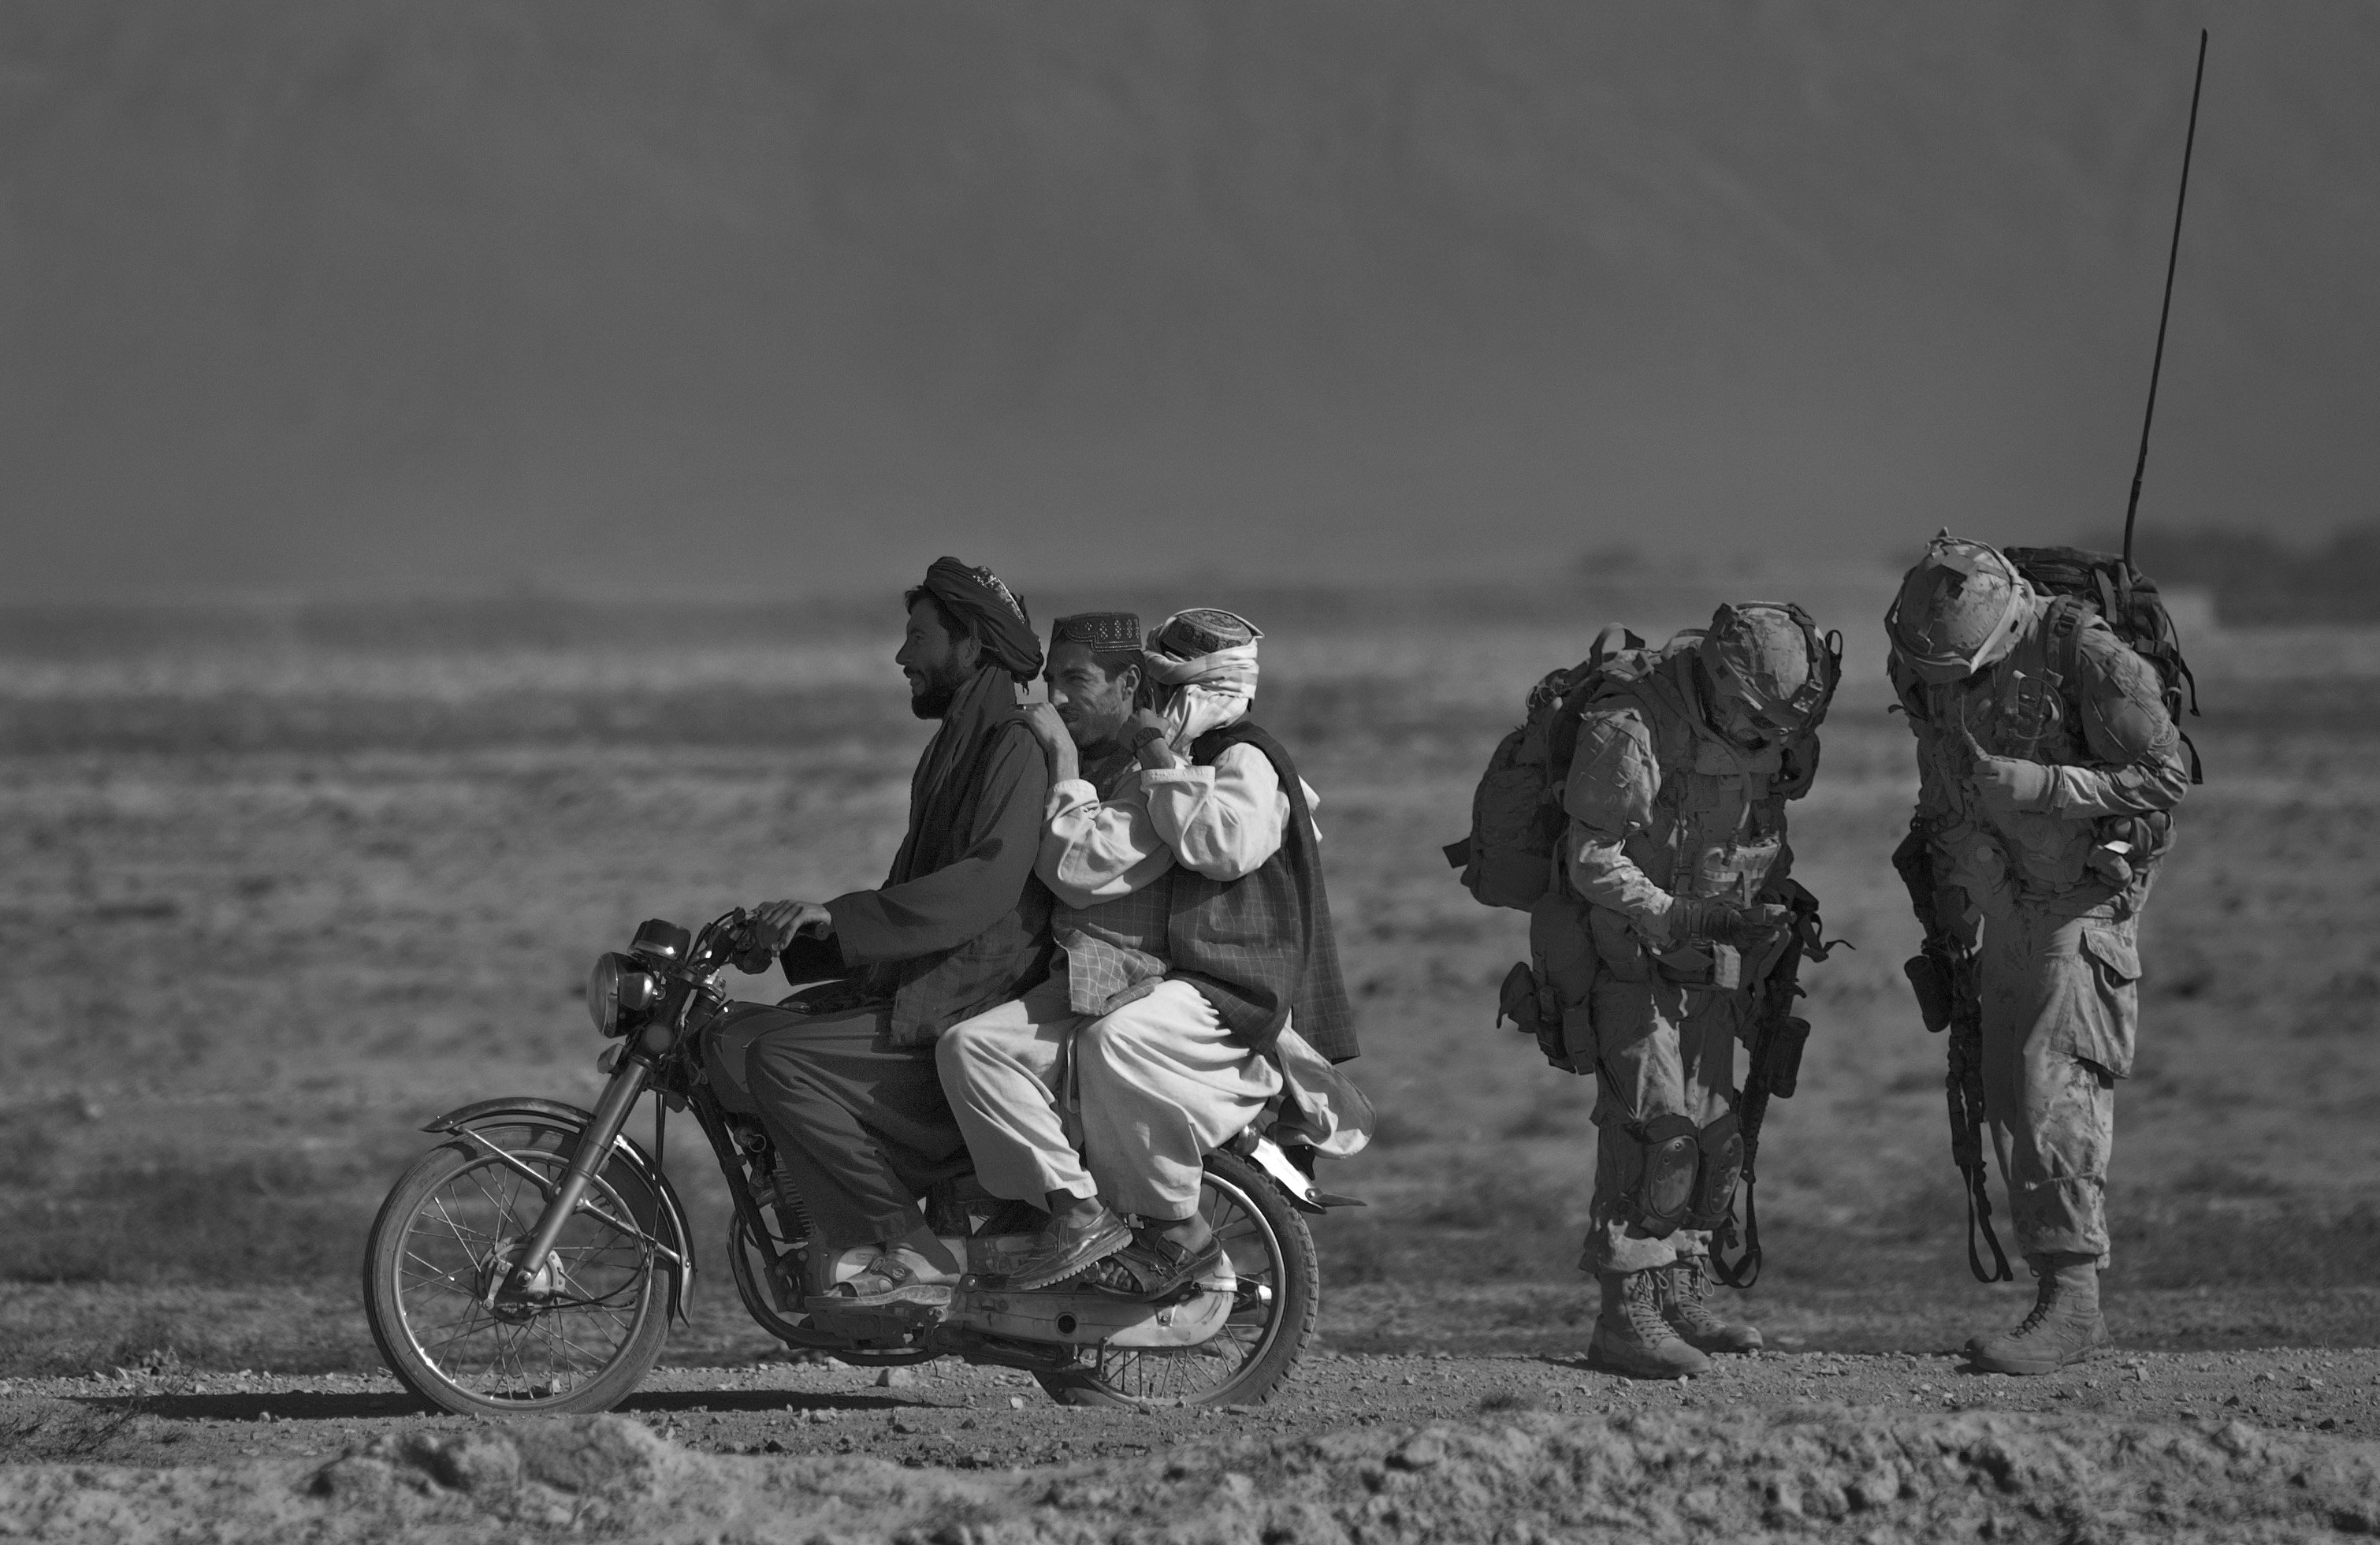 Anja Niedringhaus, Des Afghans à moto passent devant des soldats canadiens du Royal Canadian Regiment en patrouille dans le district de Panjwai, au sud-ouest de Kandahar. Salavat, Afghanistan, septembre 2010 © Anja Niedringhaus/AP/SIPA